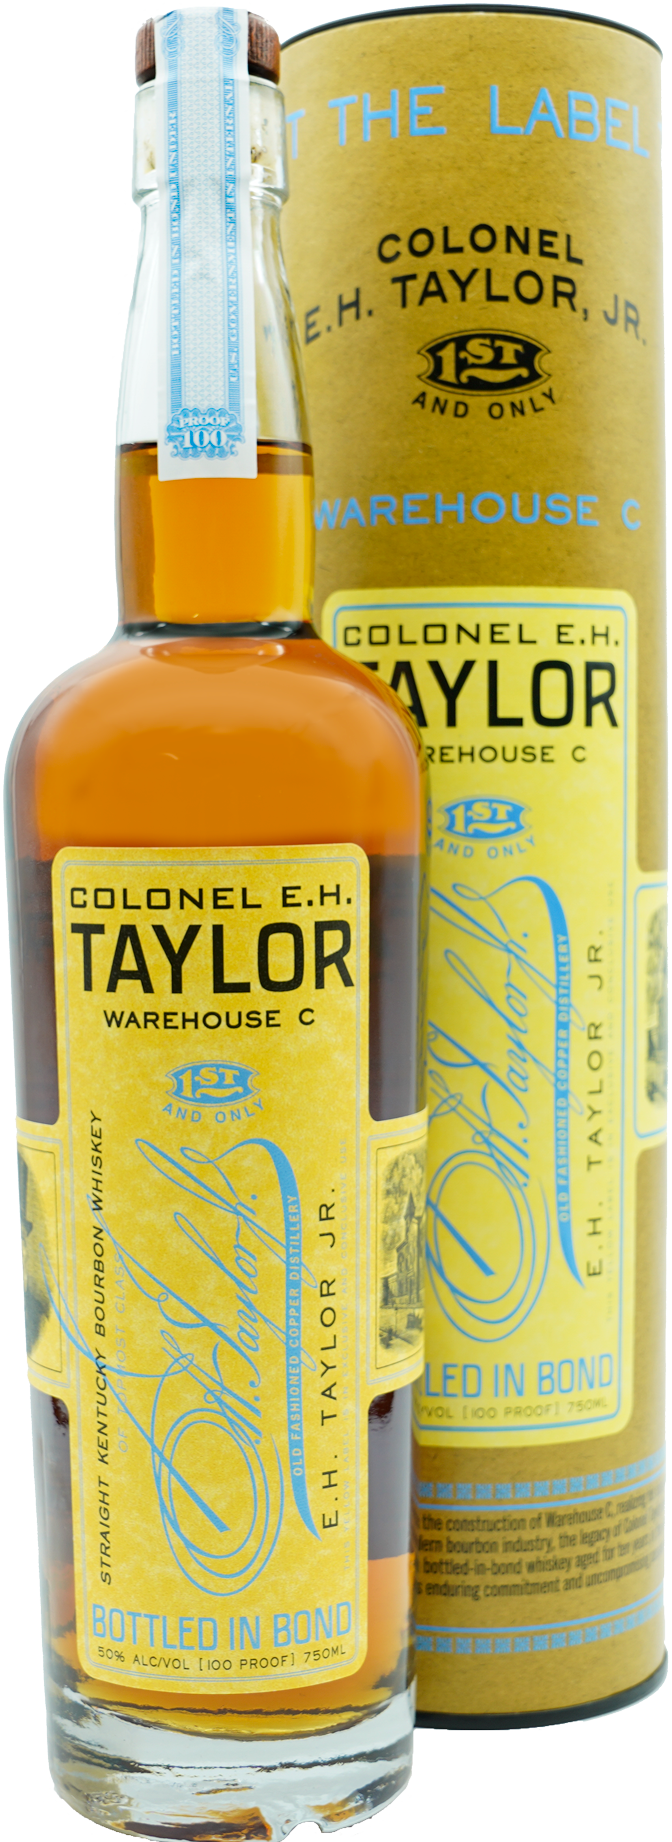 Colonel E. H. Taylor Warehouse C